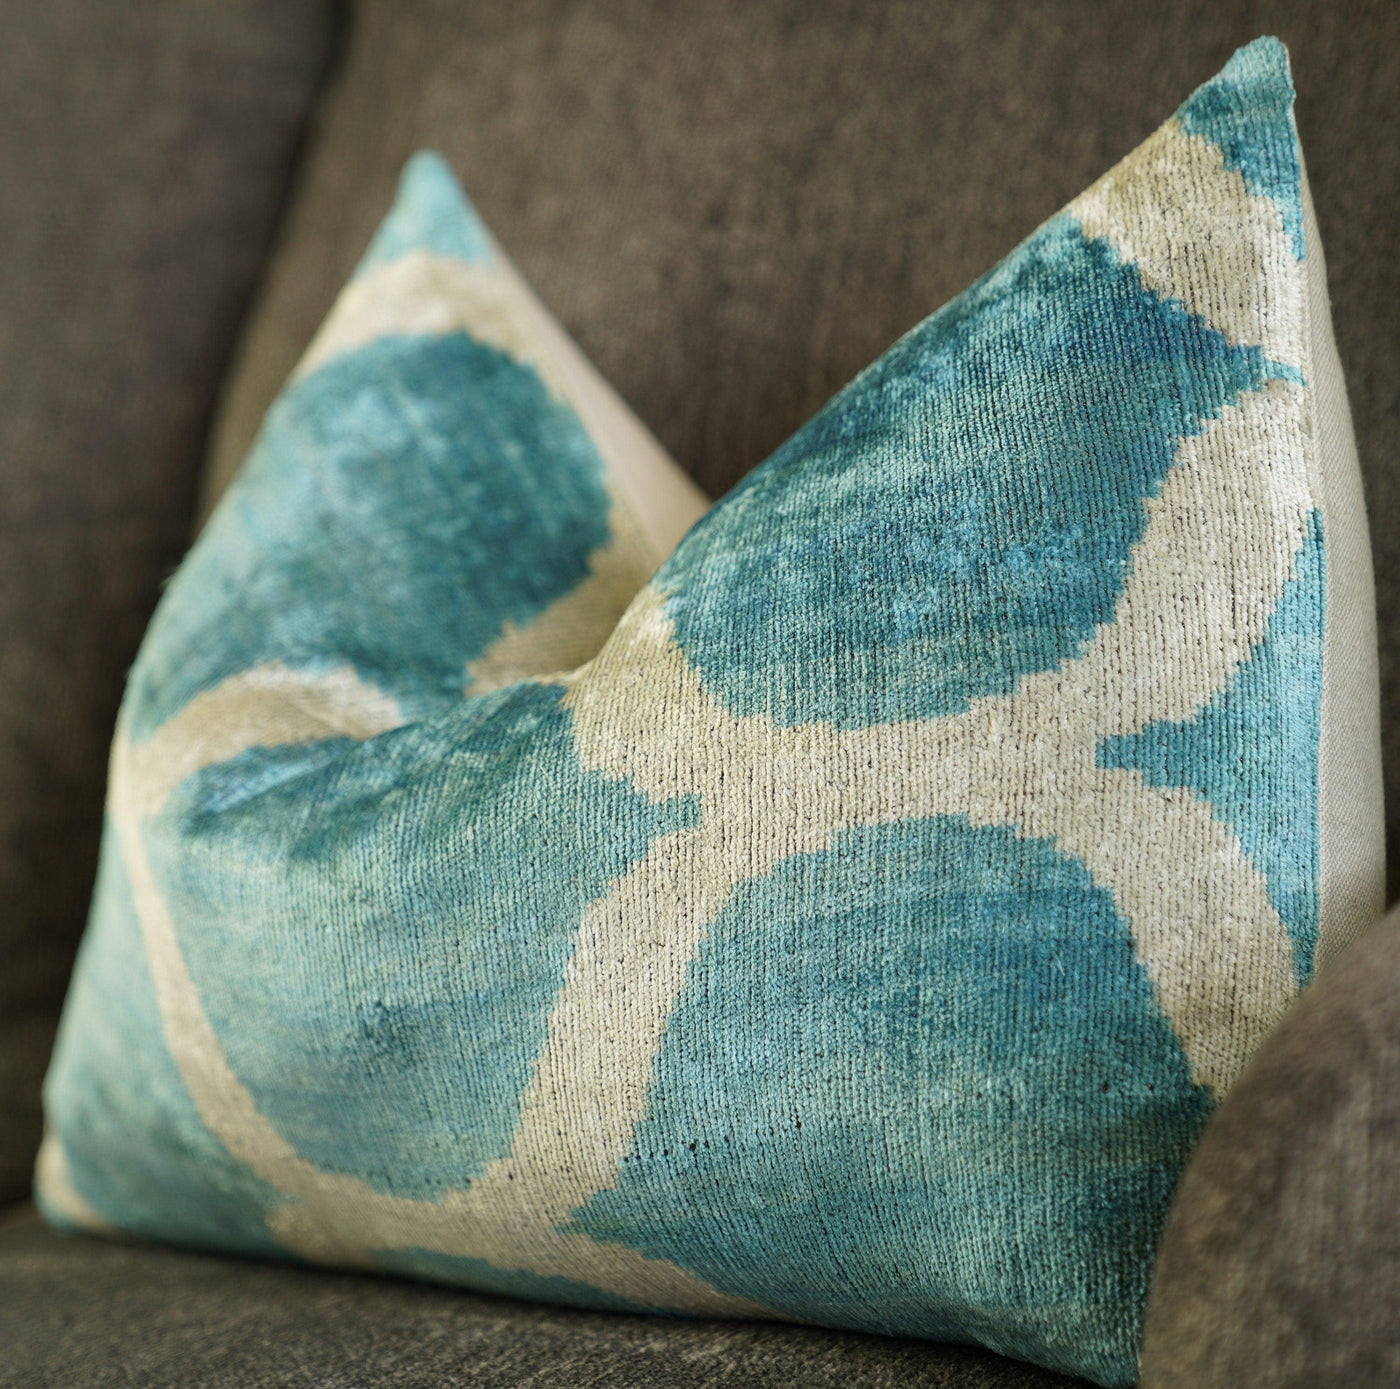 Canvello Handmade Velvet Lumbar Pillow For Sofa - 16x24 in